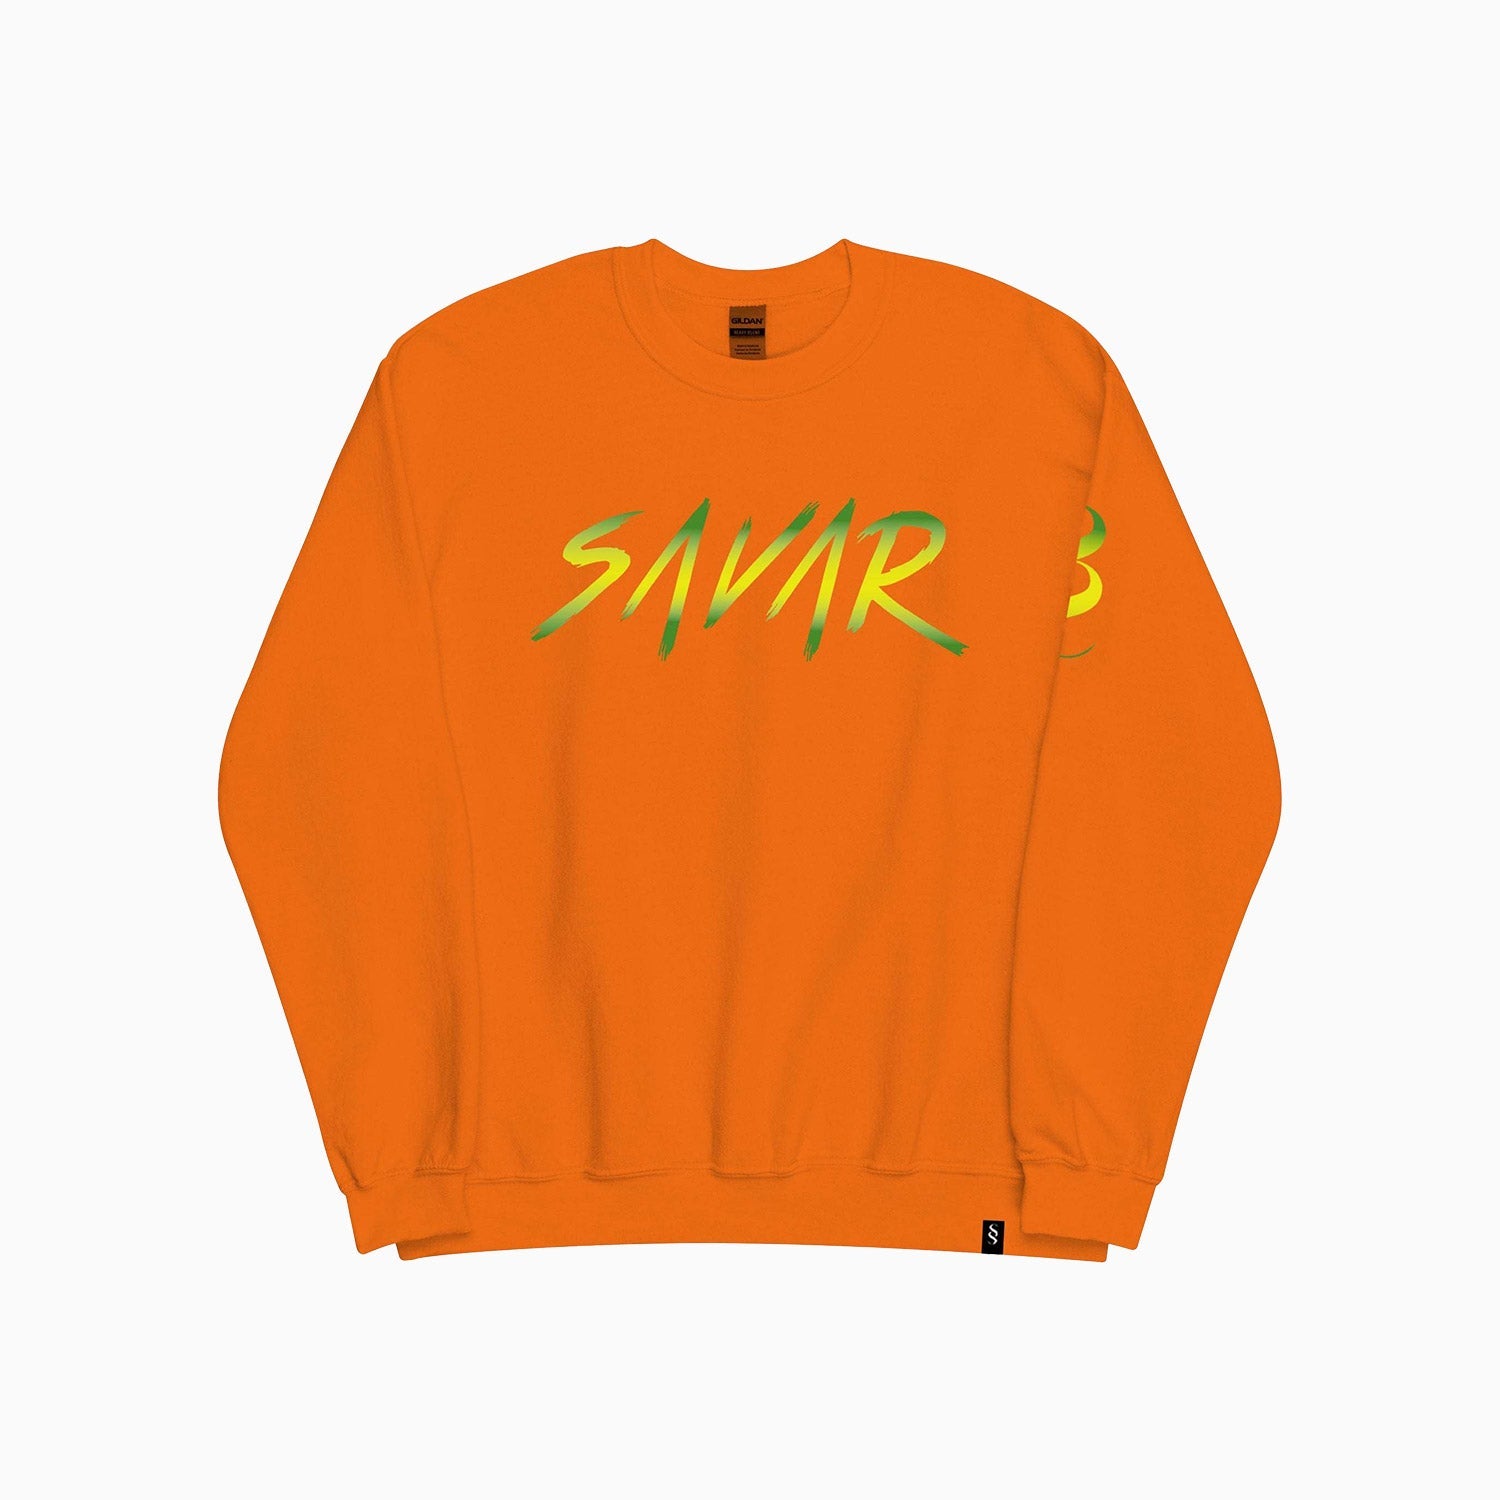 signature-design-printed-crew-neck-orange-sweatshirt-for-men-sc111-852